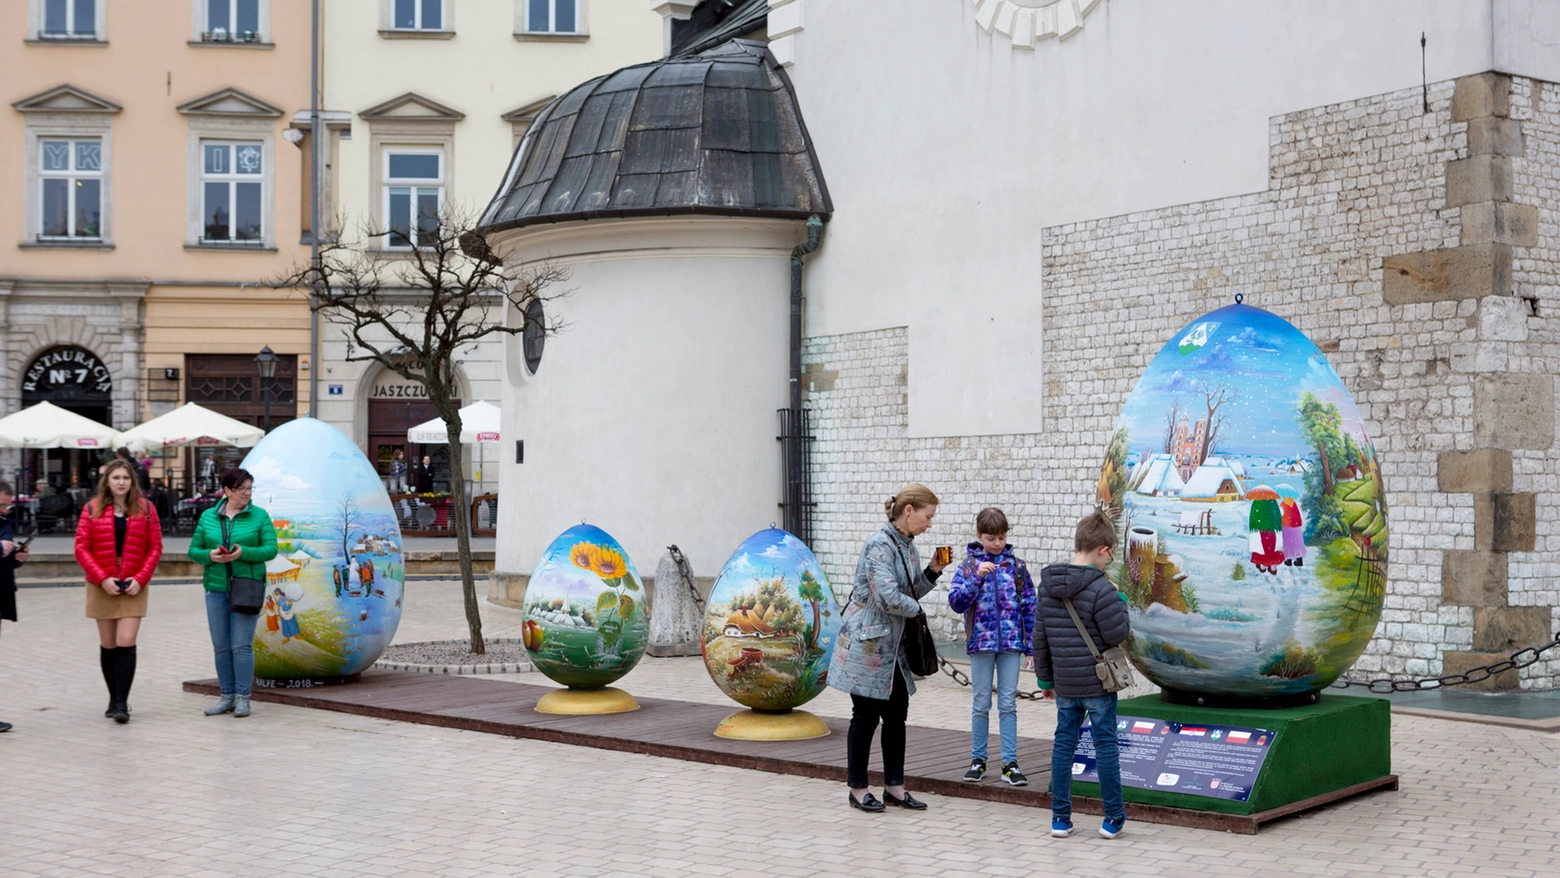 Uova e palme decorate, mercatini e momenti religiosi. Nel Paese la ricorrenza cattolica è molto sentita, soprattutto a Cracovia